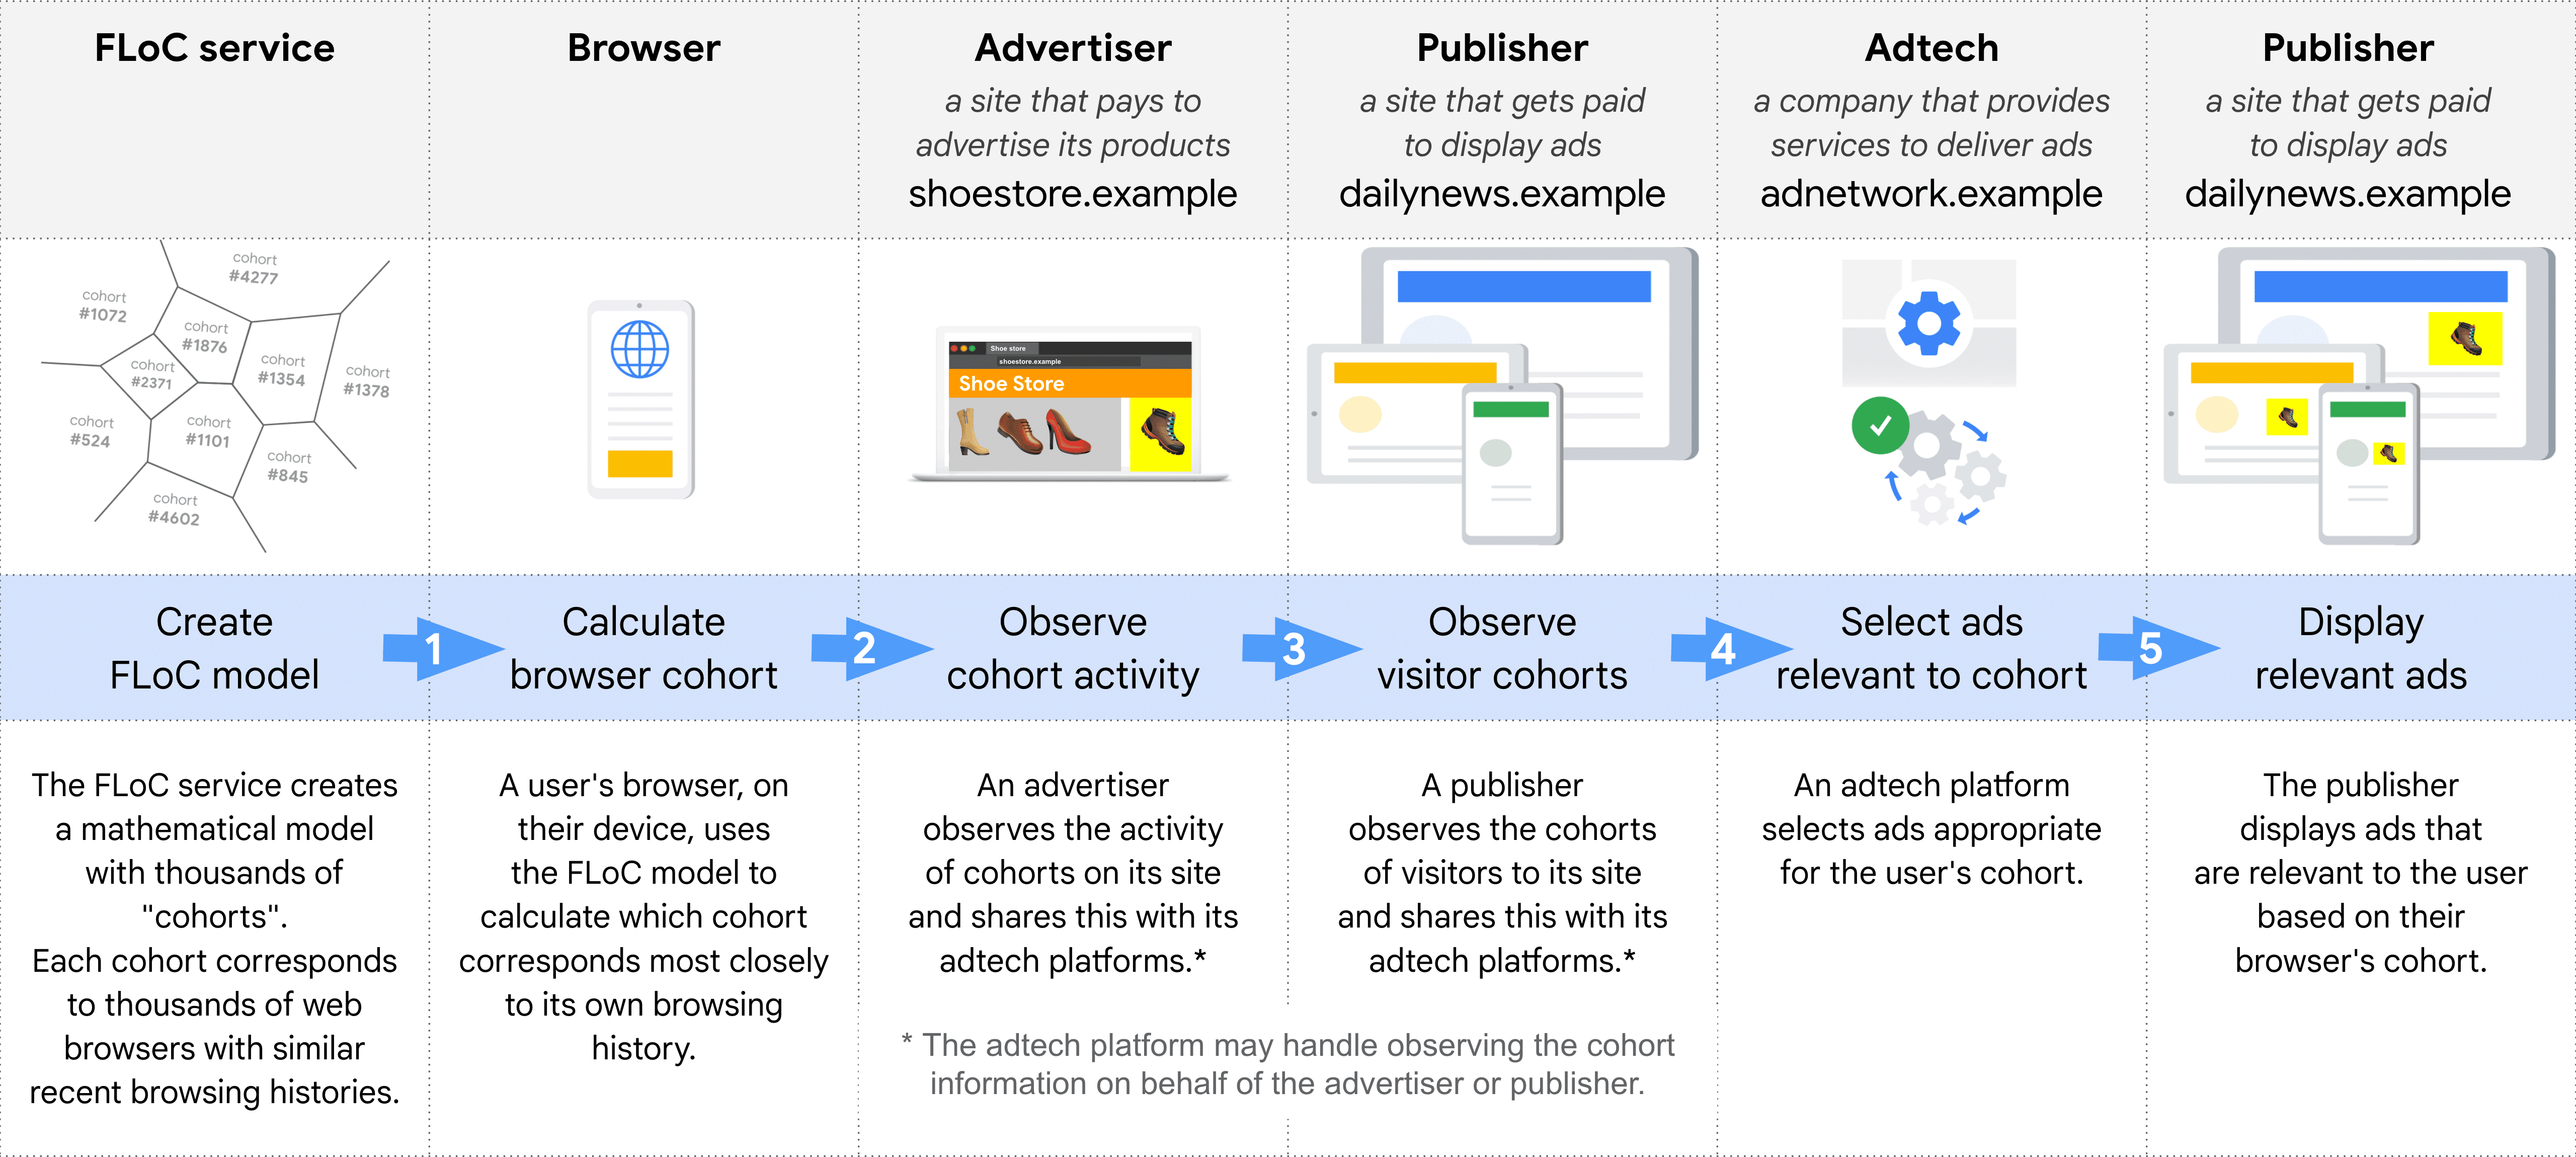 FLoC kullanarak bir reklamın seçilmesi ve yayınlanmasındaki farklı rolleri adım adım gösteren şema: FLoC hizmeti, Tarayıcı, Reklamverenler, Yayıncı (kohortları gözlemlemek için), Adtech, Yayıncı (reklamları görüntülemek için)